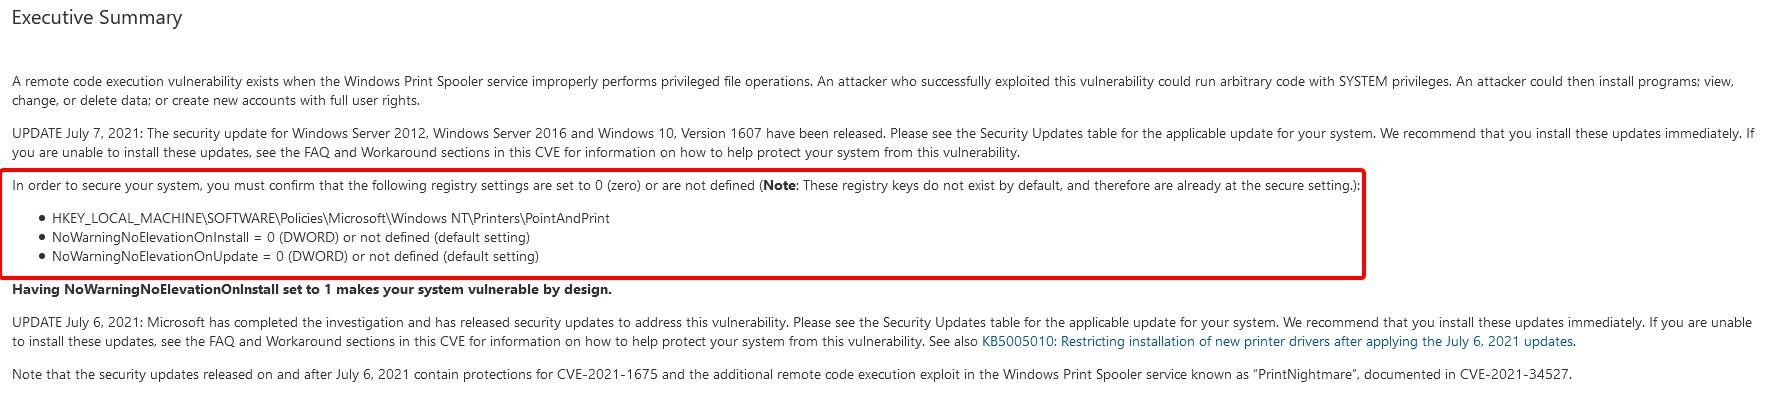 KB5004945 emergency Windows Update